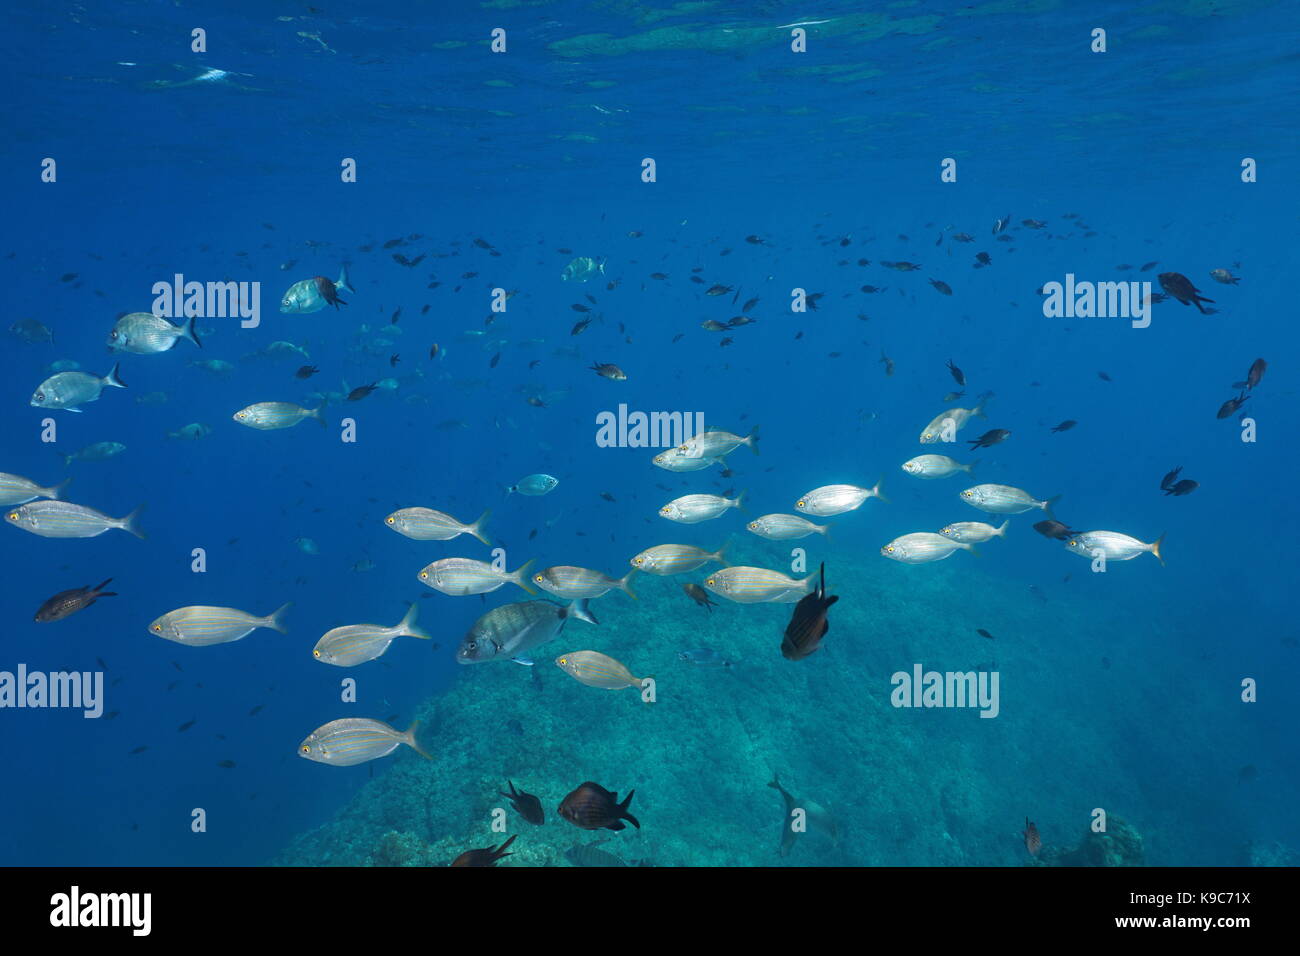 Mittelmeer Schwarm von Fischen unter Wasser mit riffbarsche, salema Porgy und weißen Meerbrasse, Costa Brava, Spanien Stockfoto